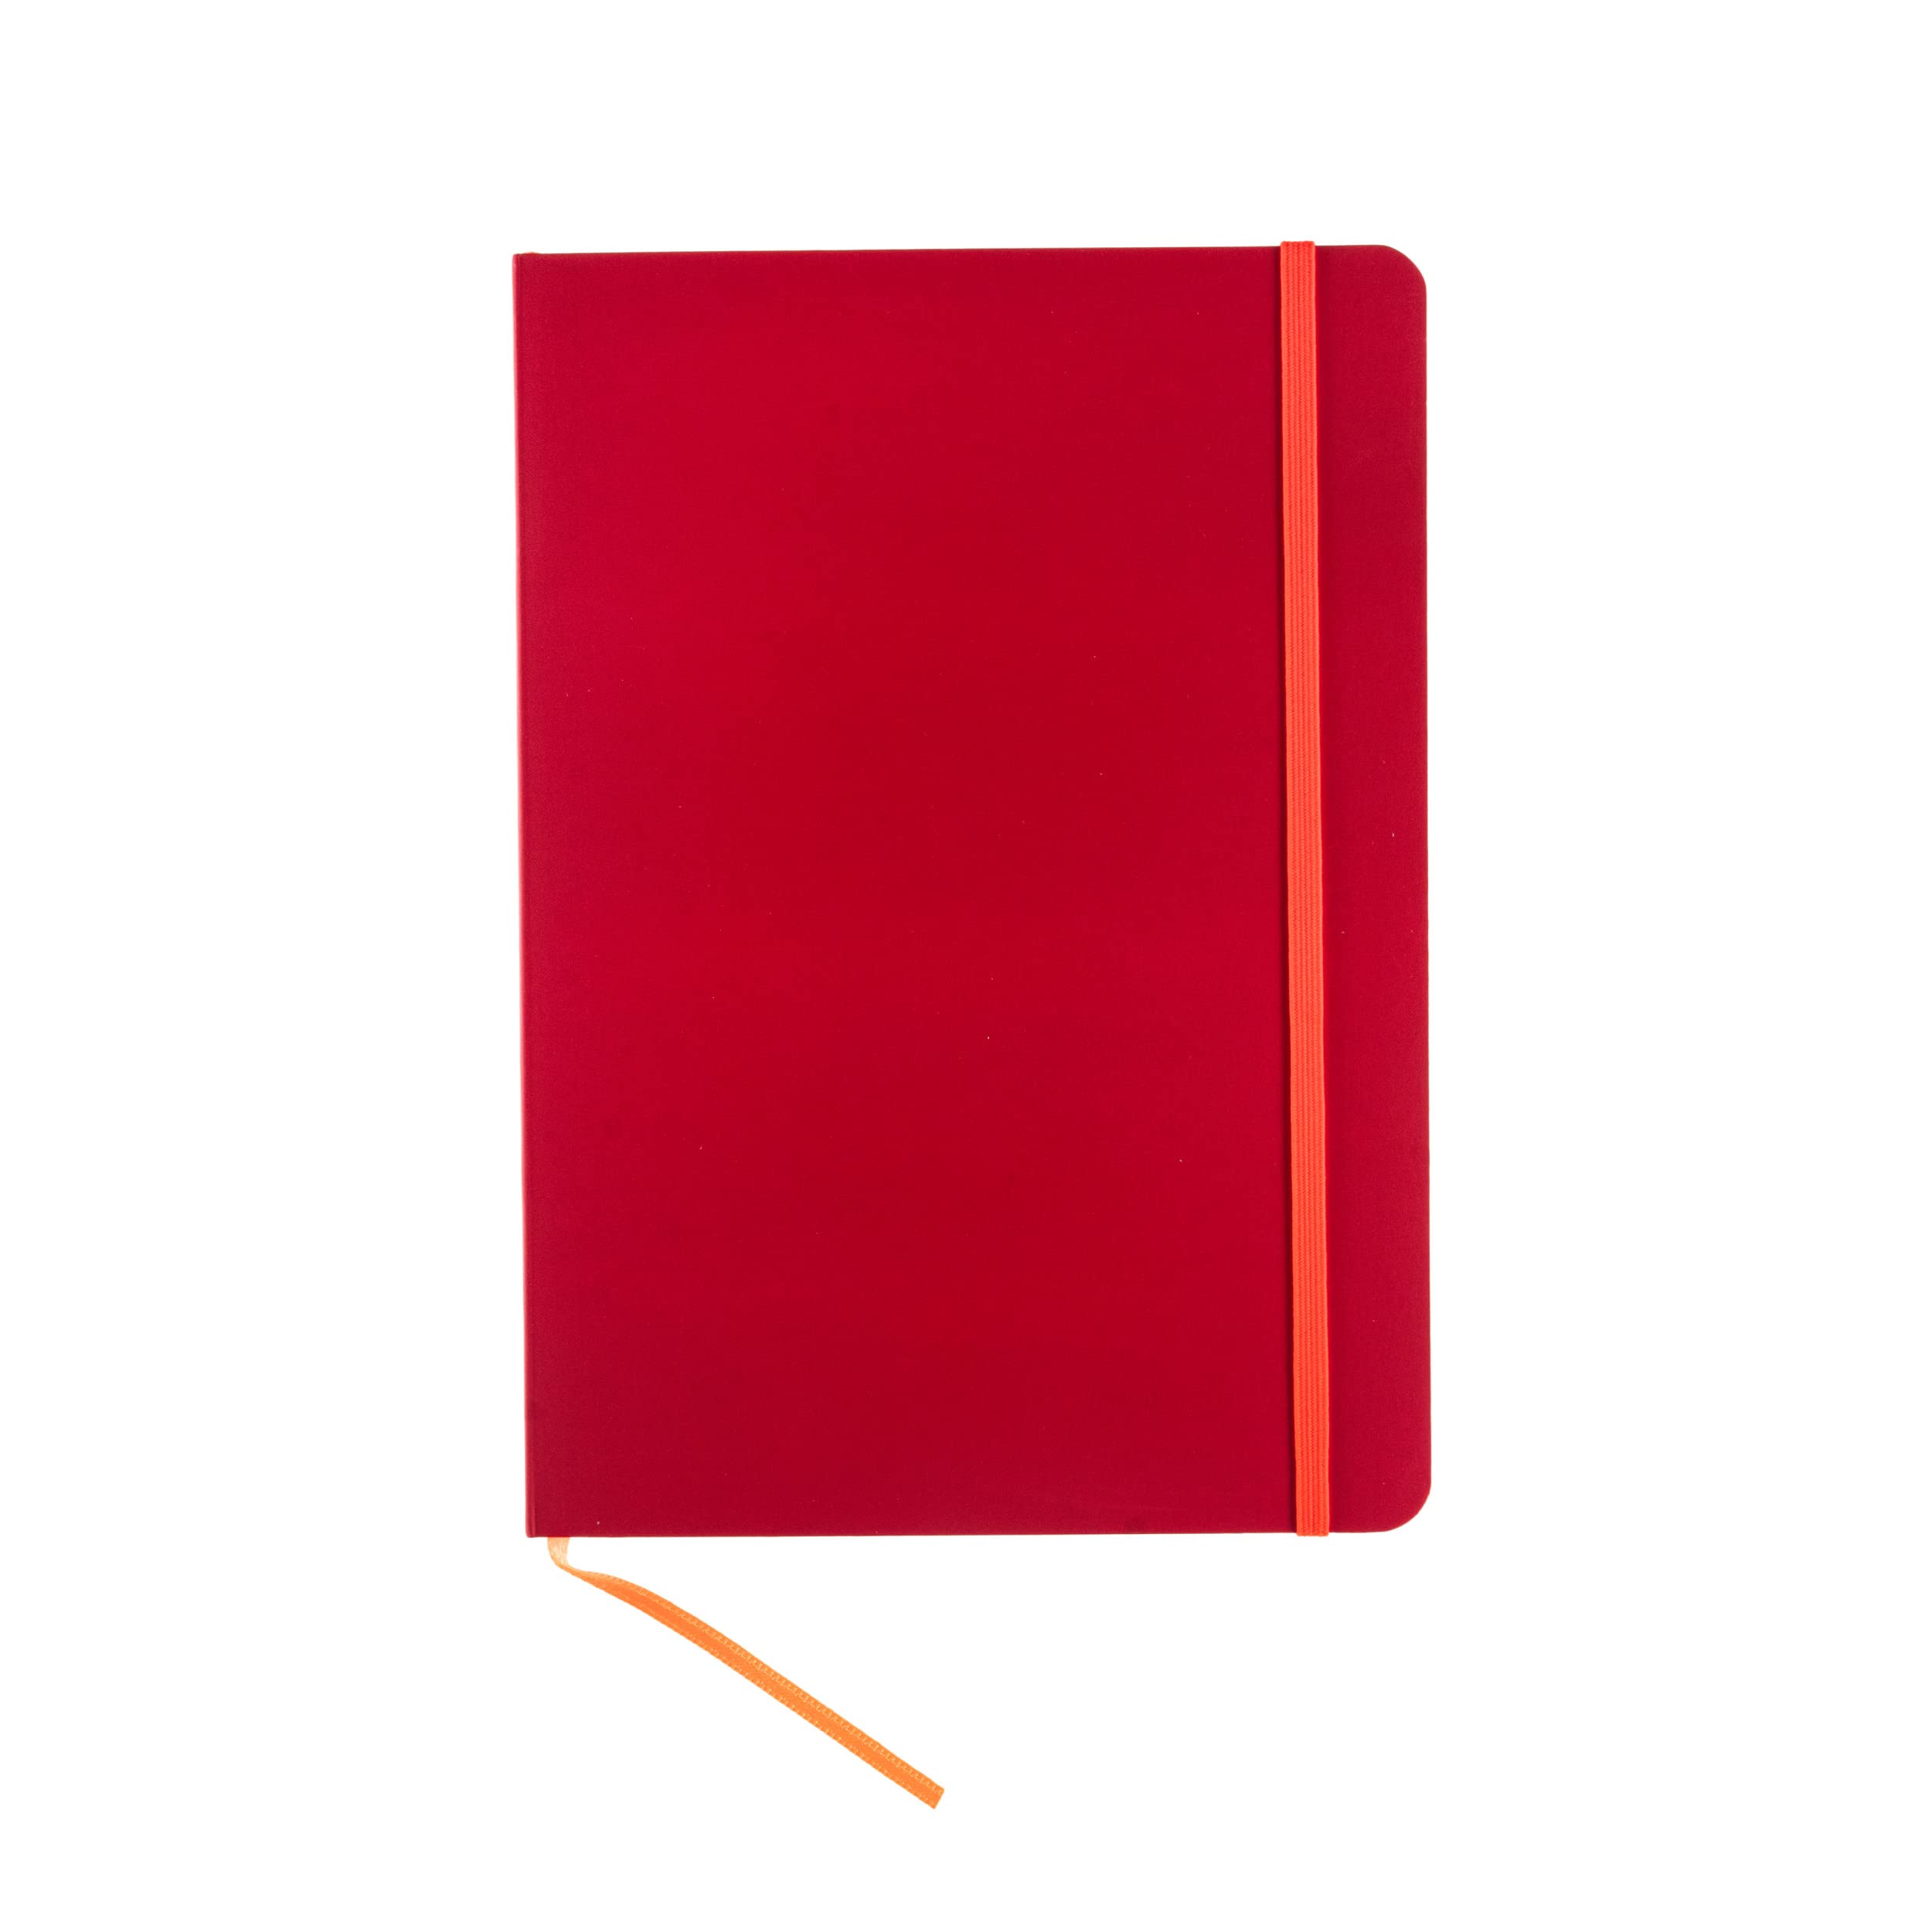 Taccuino Ispira - con elastico - copertina flessibile - A5 - 96 fogli - puntinato - rosso - Fabriano